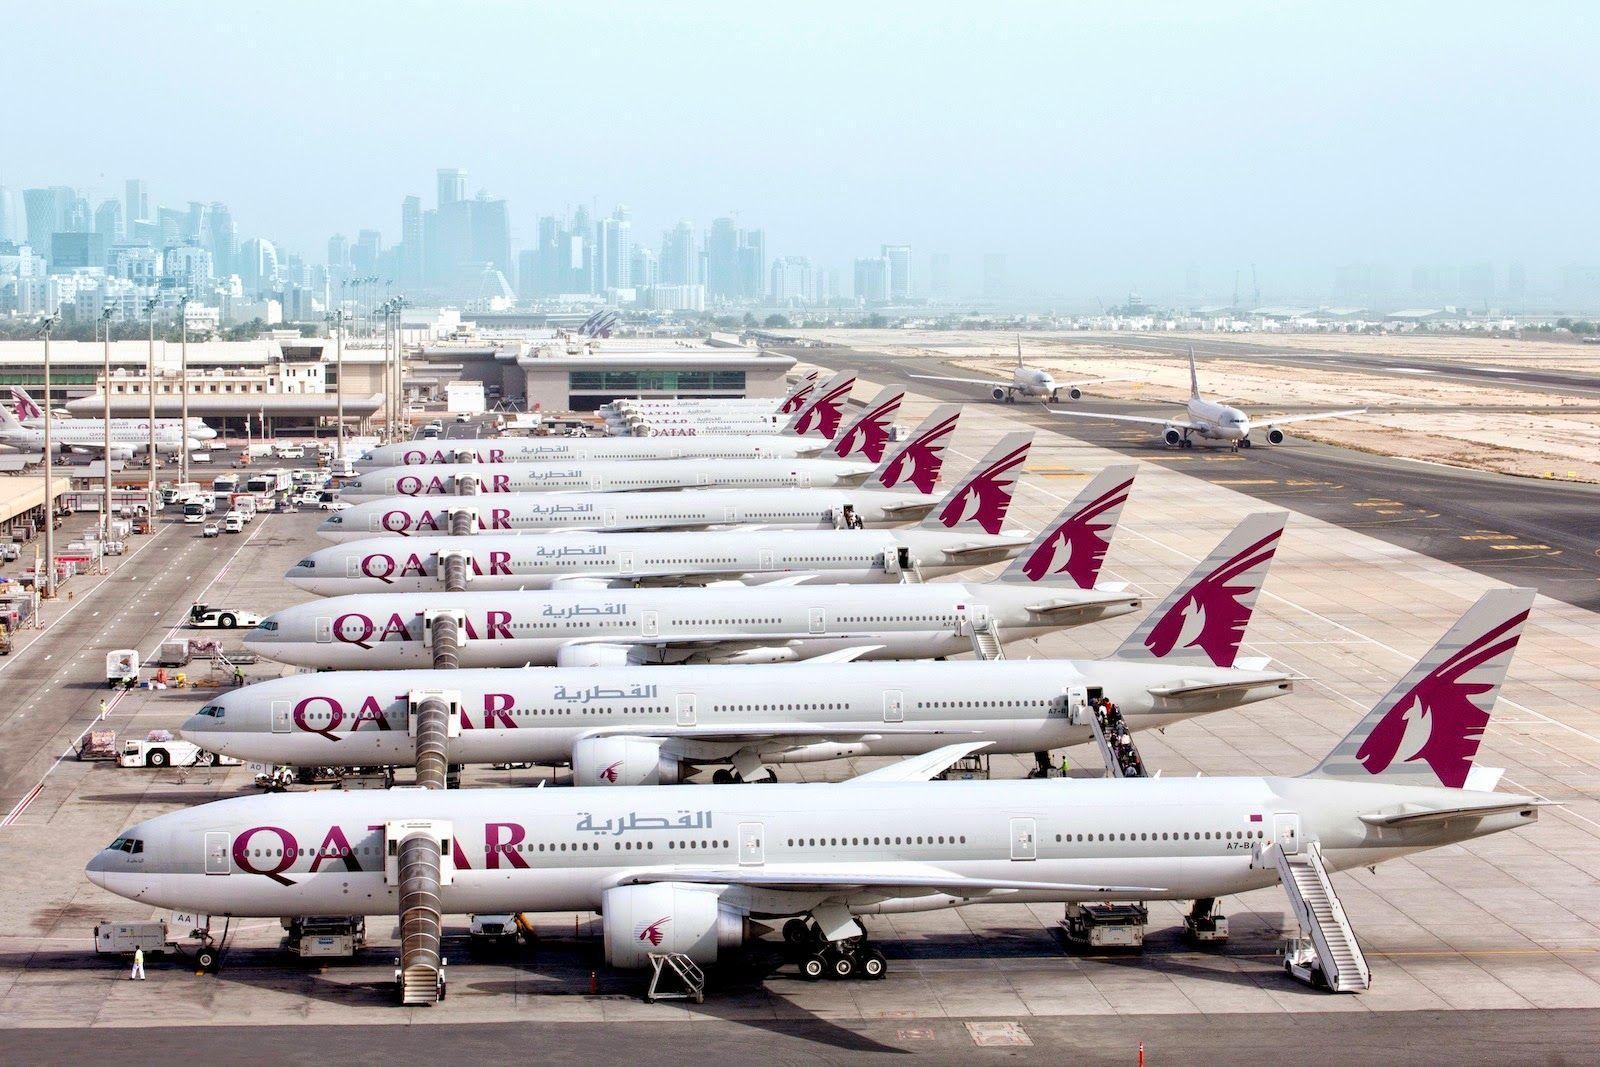 Best Wallpaper: Qatar Airways HD Wallpaper Free Download full